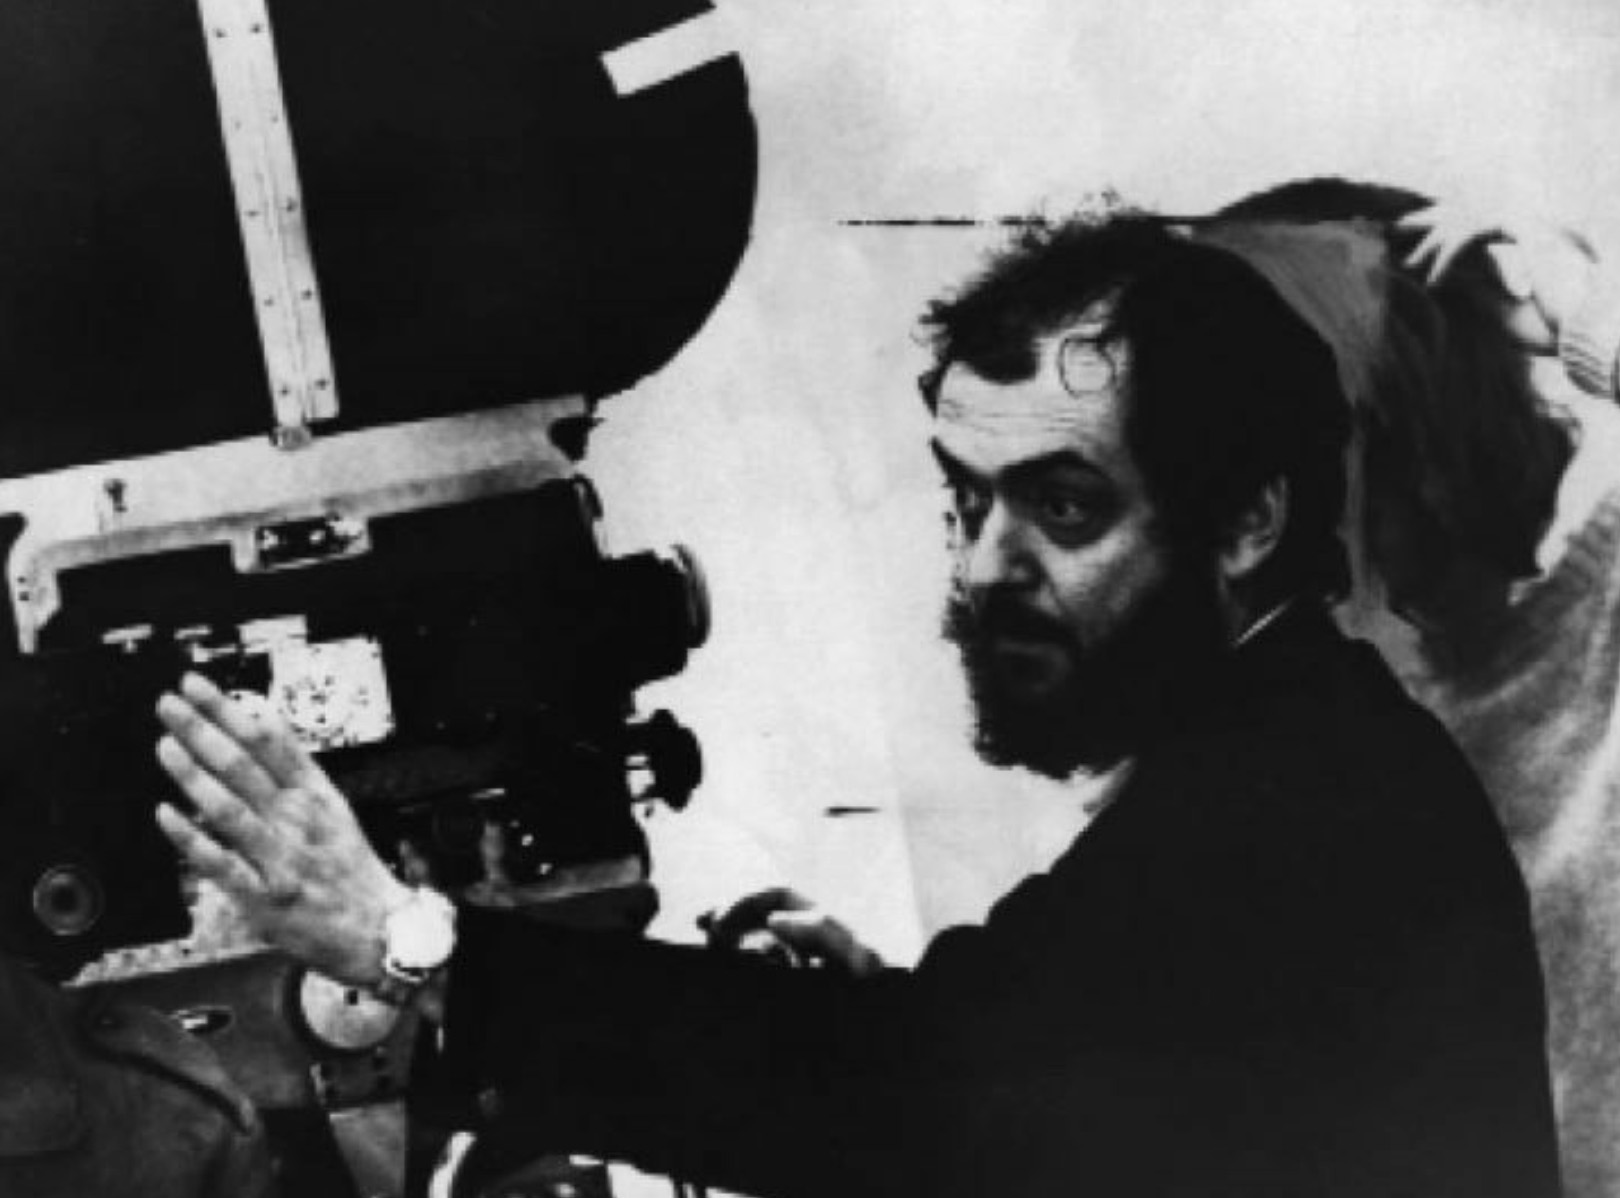 1971年,导演斯坦利-库布里克拍摄了知名影片《发条橙》,这张老照片